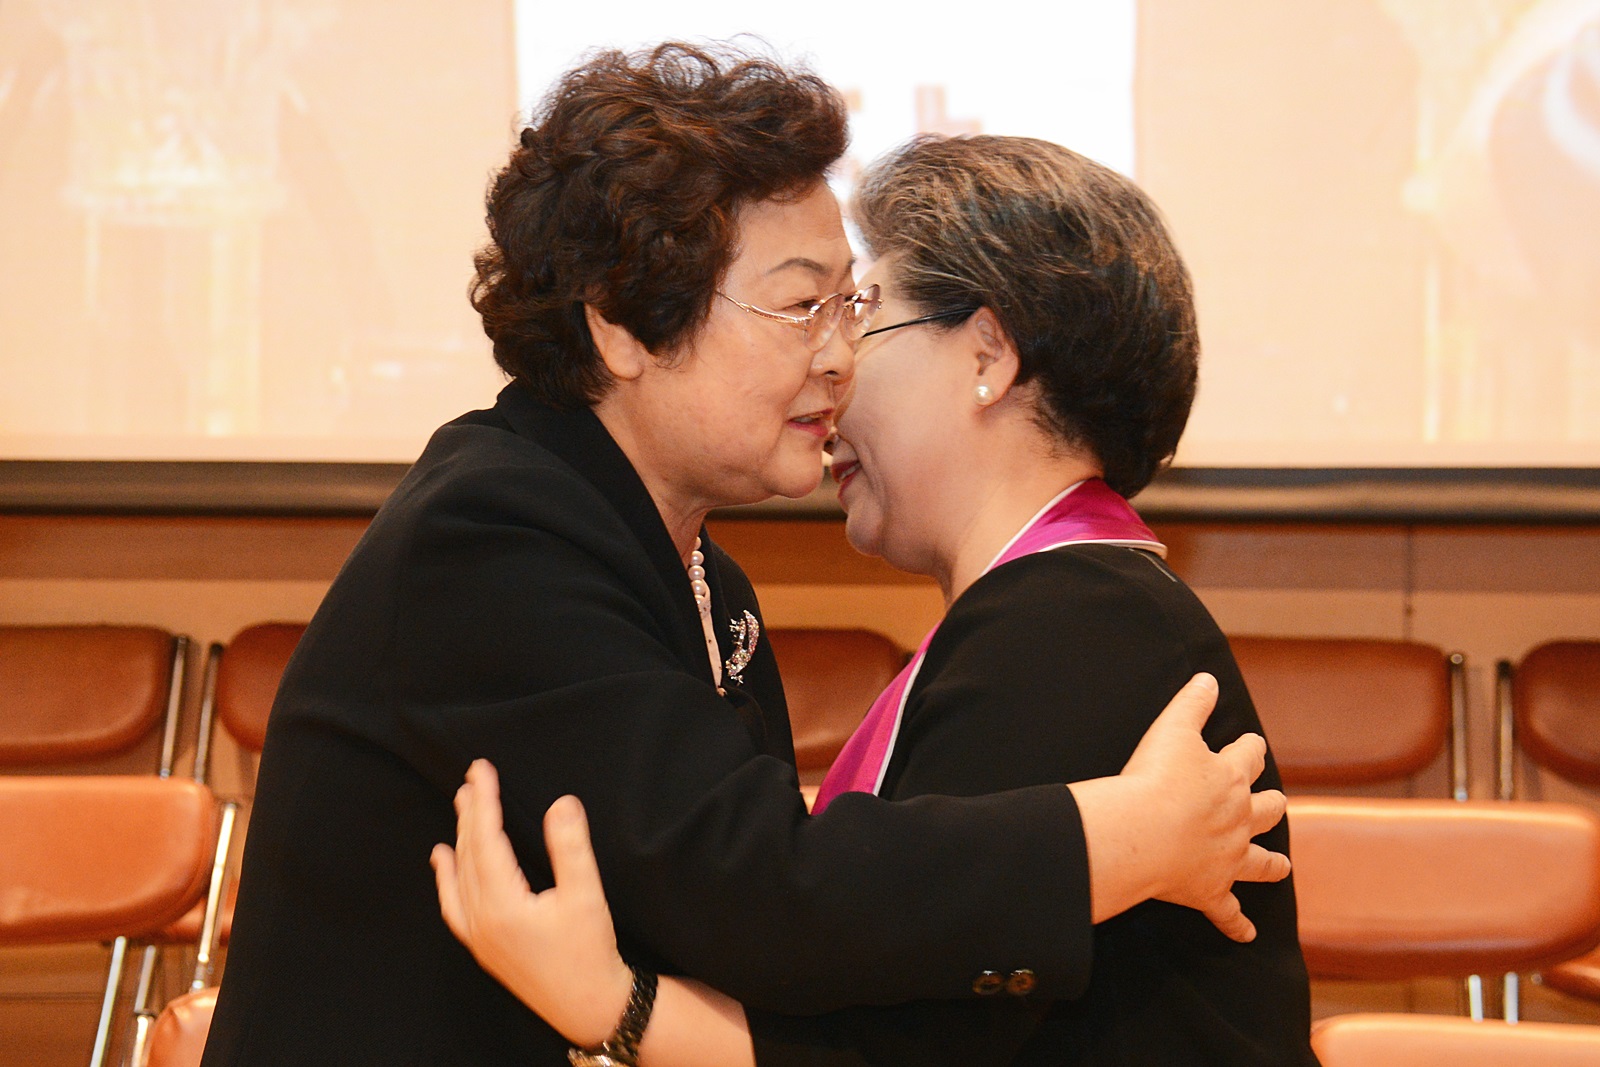 ▲ 박인자 전임회장(왼쪽)과 김순미 신임회장이 서로 안아주고 있다.